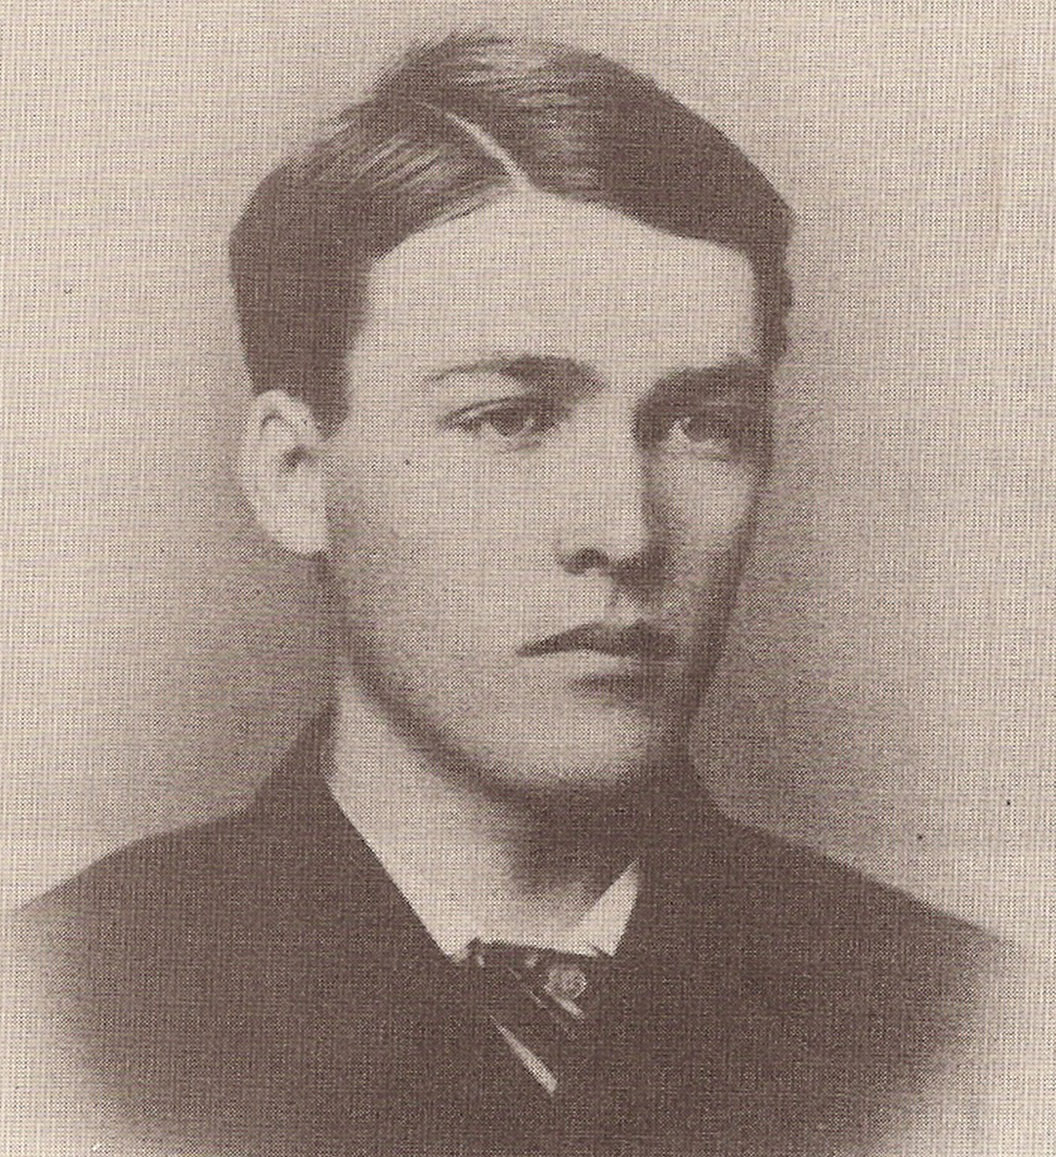 Warren Earp at age 25